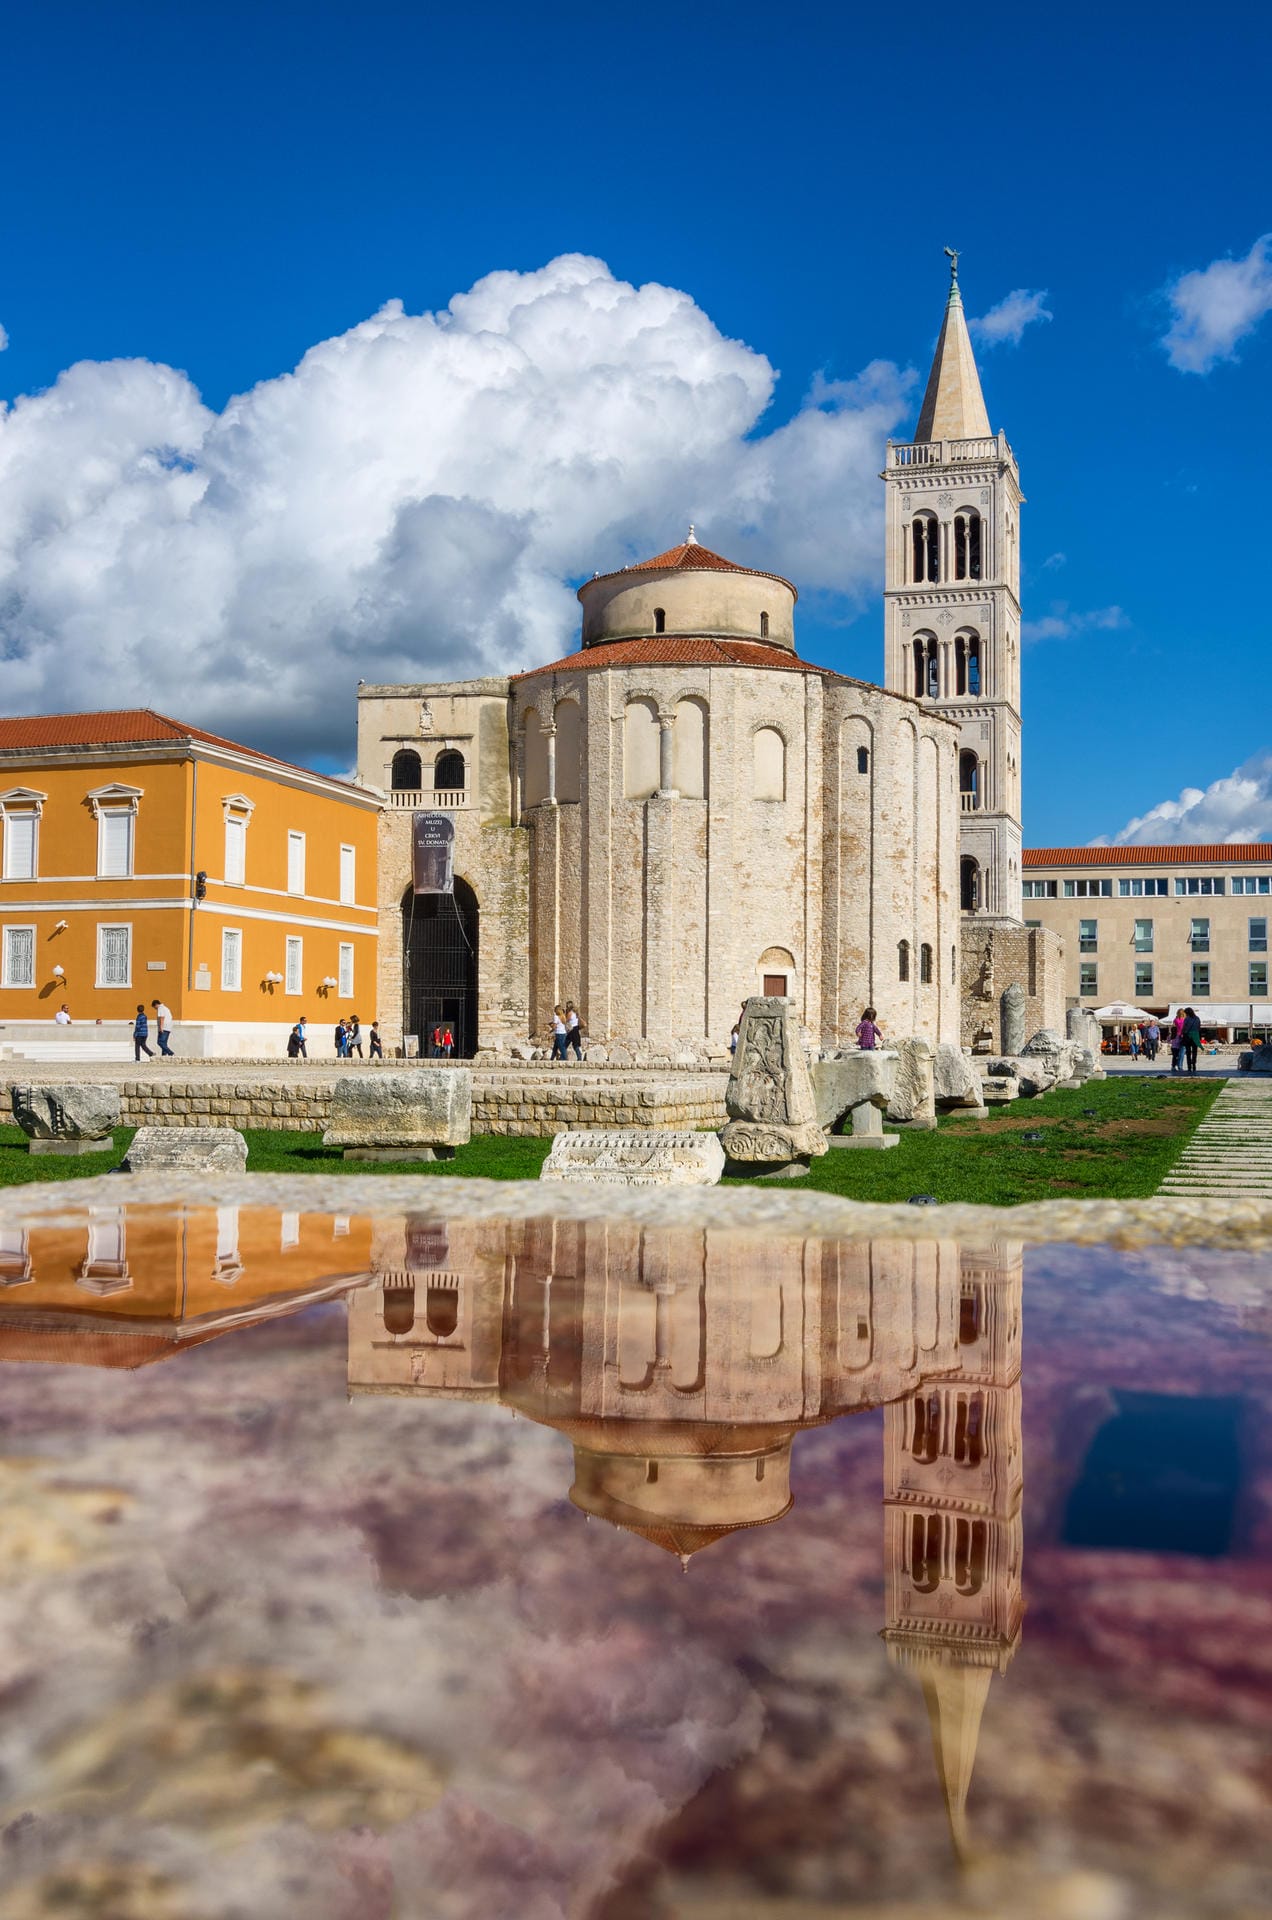 Die 3000 Jahre alte Stadt Zadar ist vor allem für ihre Architektur bekannt. Hier stehen unter anderem das älteste römische Forum im kroatischen Teil der Adria, sowie unzählige romanische Kirchen wie die St. Donatus Kirche.